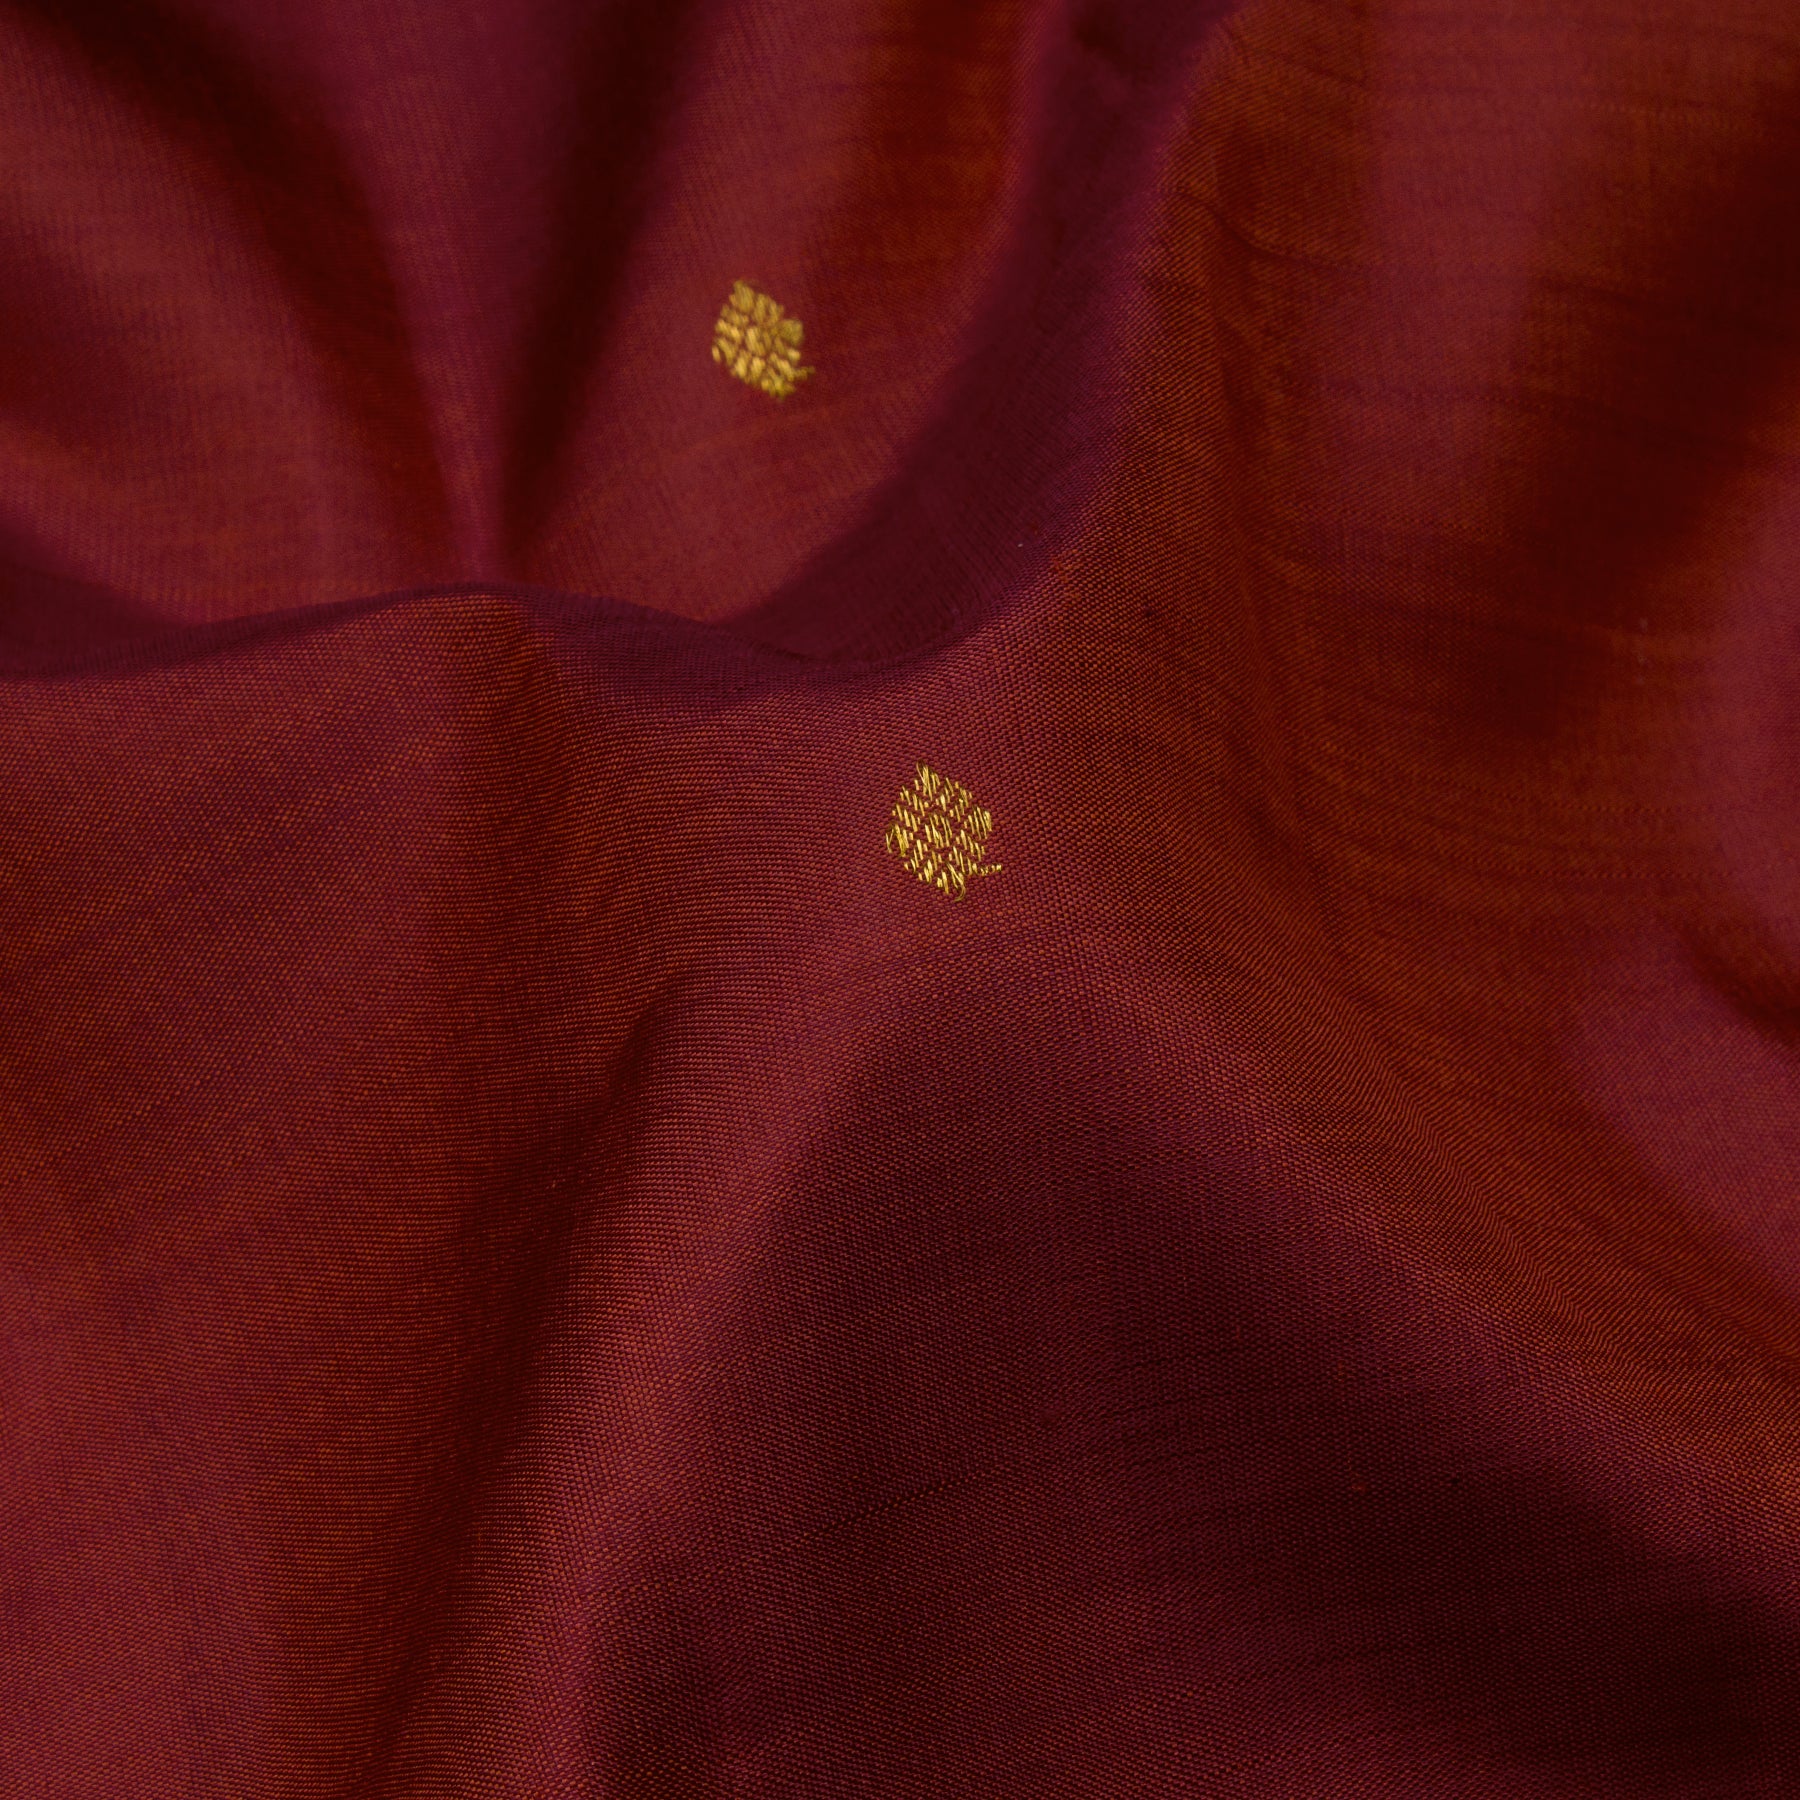 Kanakavalli Kanjivaram Silk Sari 23-611-HS001-14486 - Fabric View